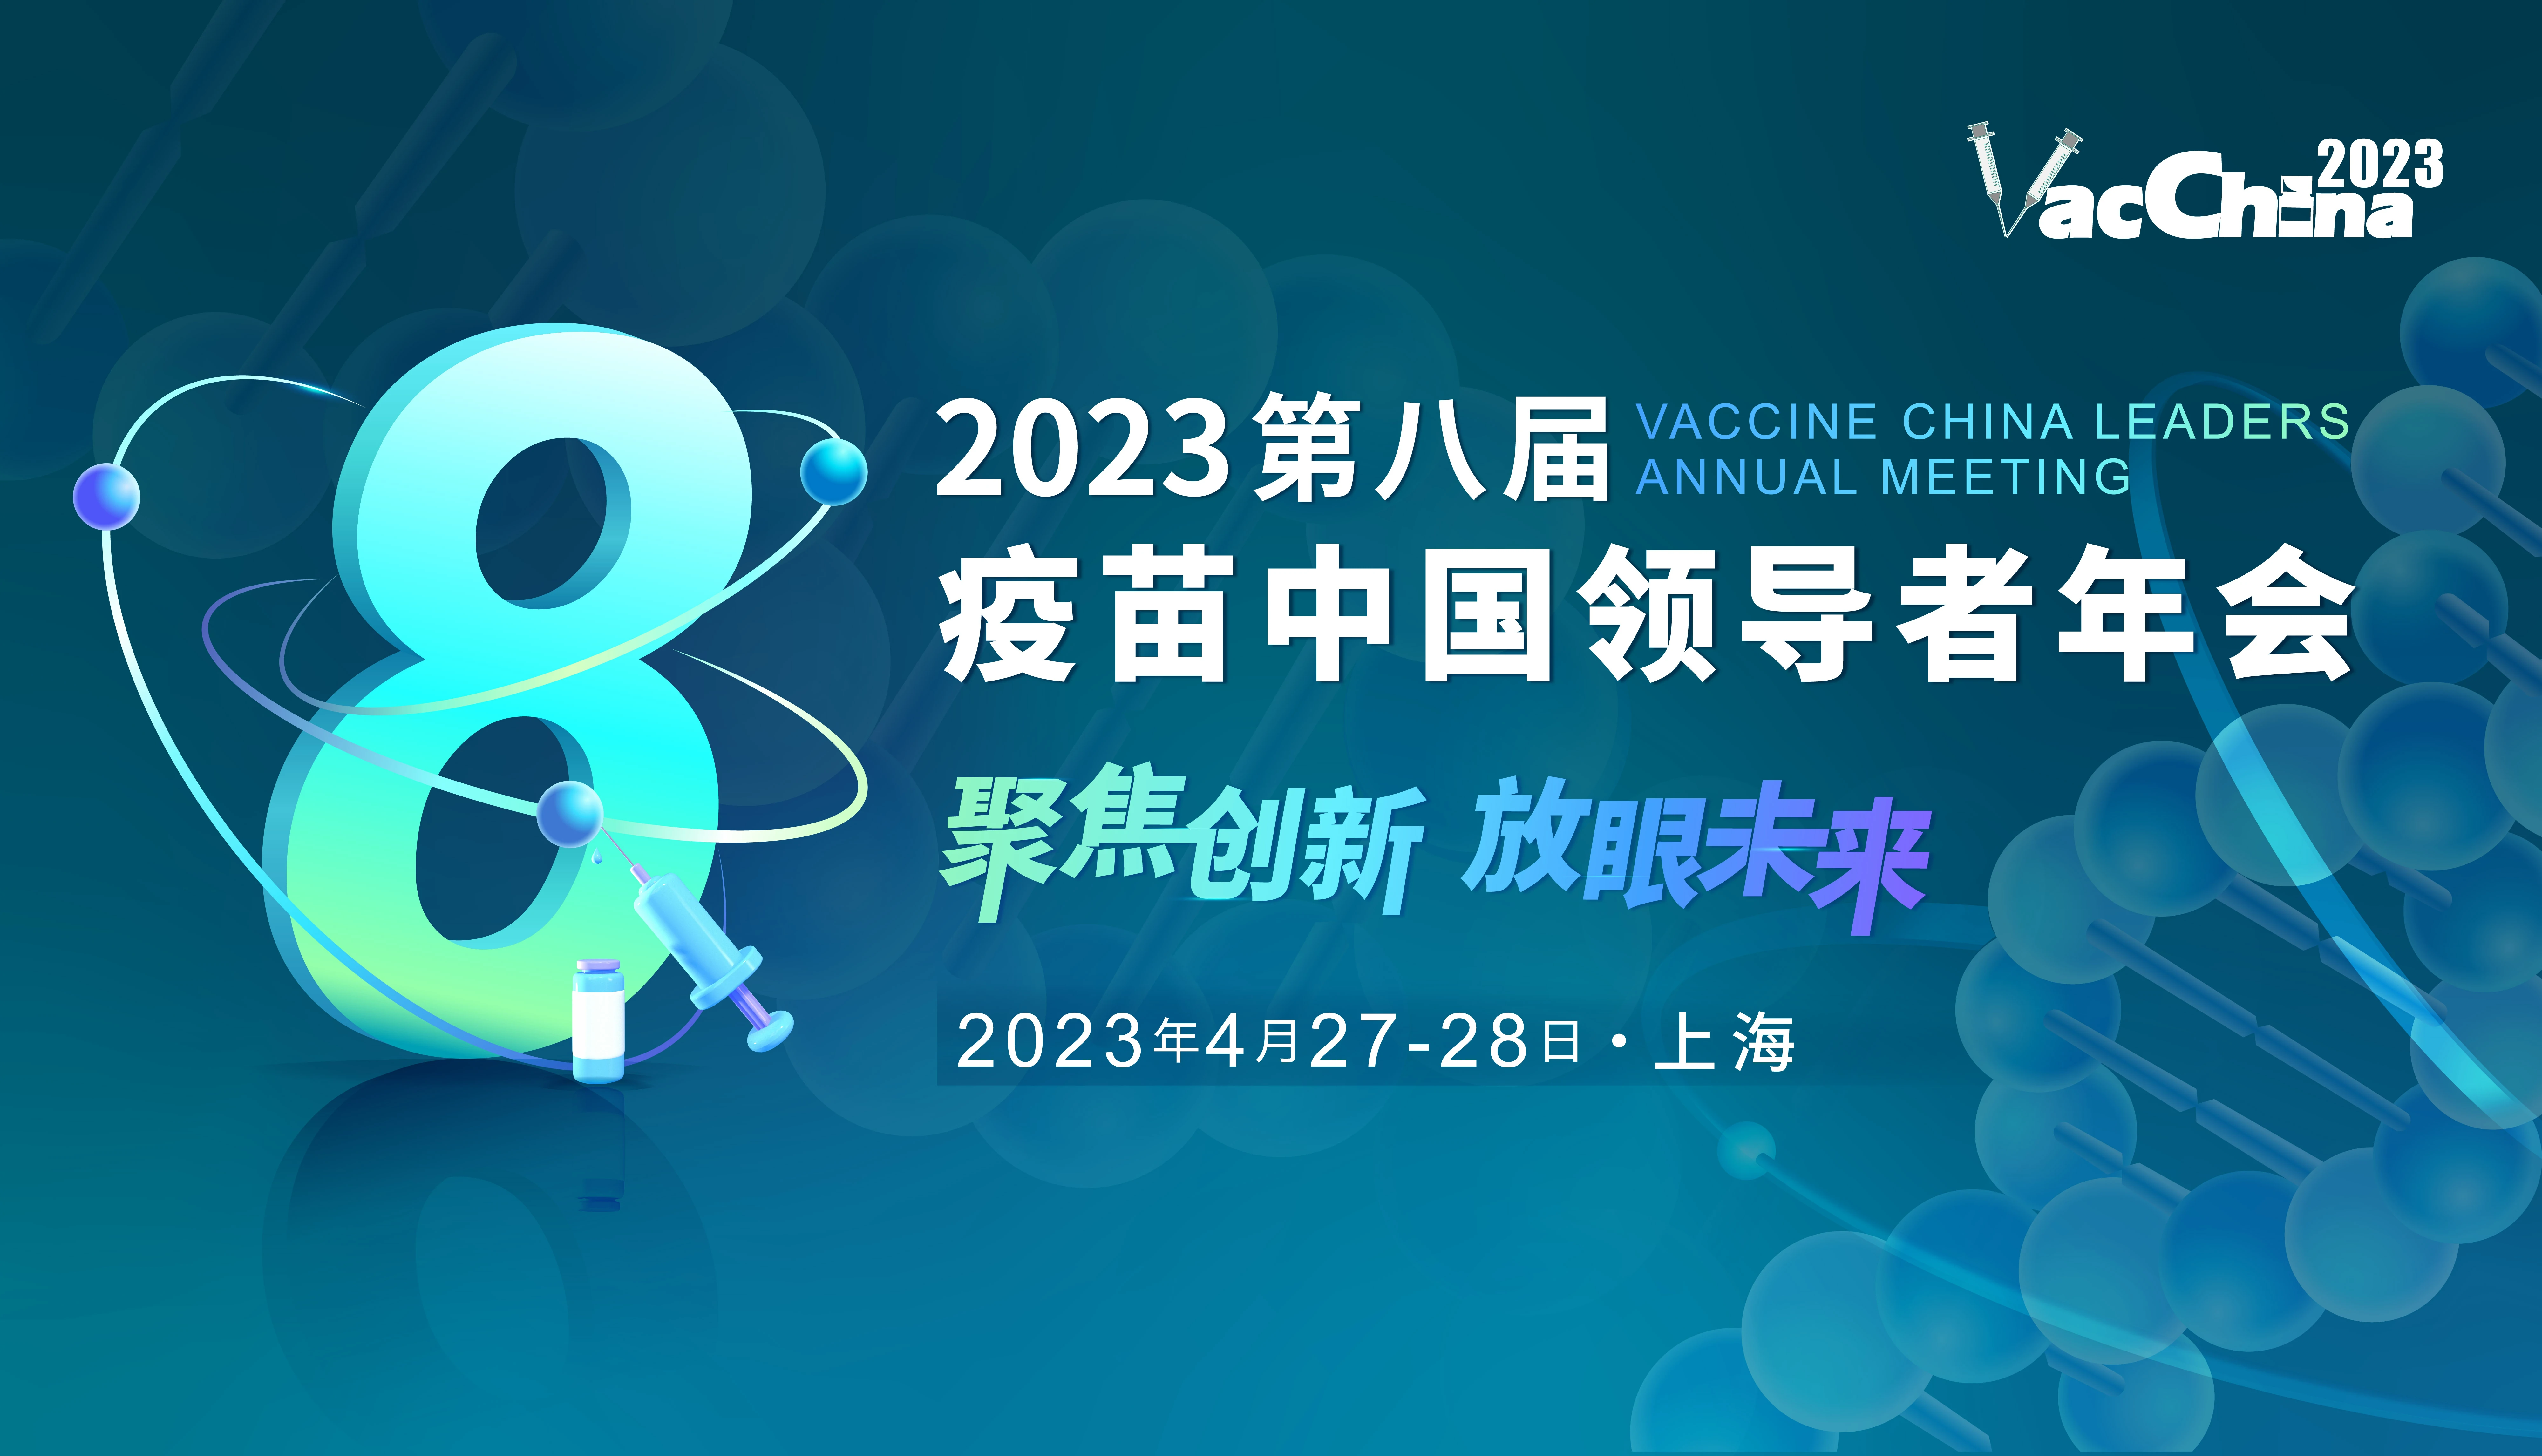  展会邀请 | 福流生物邀您参加2023第八届疫苗中国领导者年会